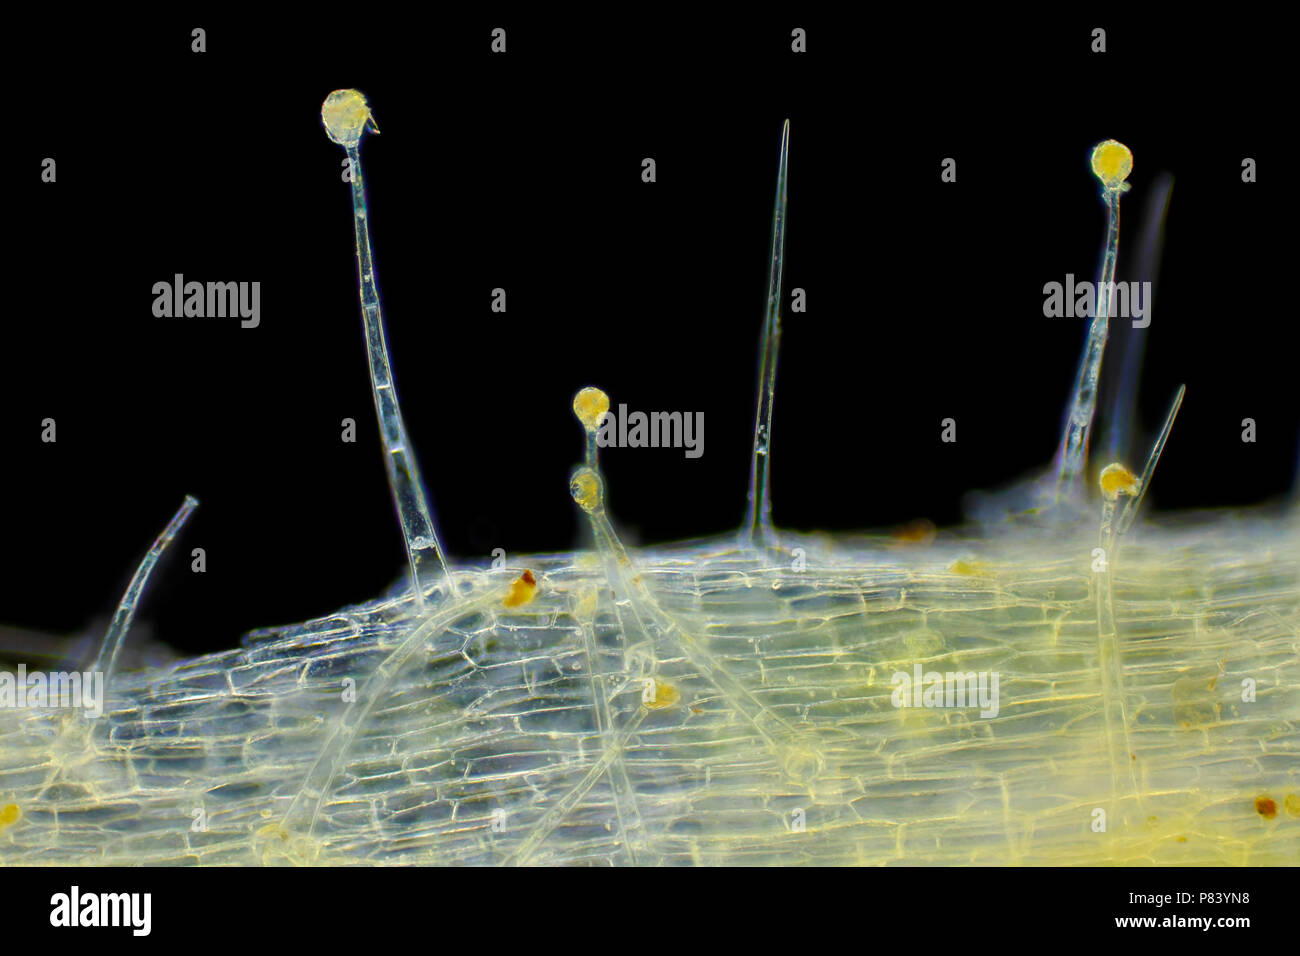 Vista microscopica del giardino (geranio Pelargonium x hortorum) tricomi (peli). Illuminazione a campo oscuro. Foto Stock